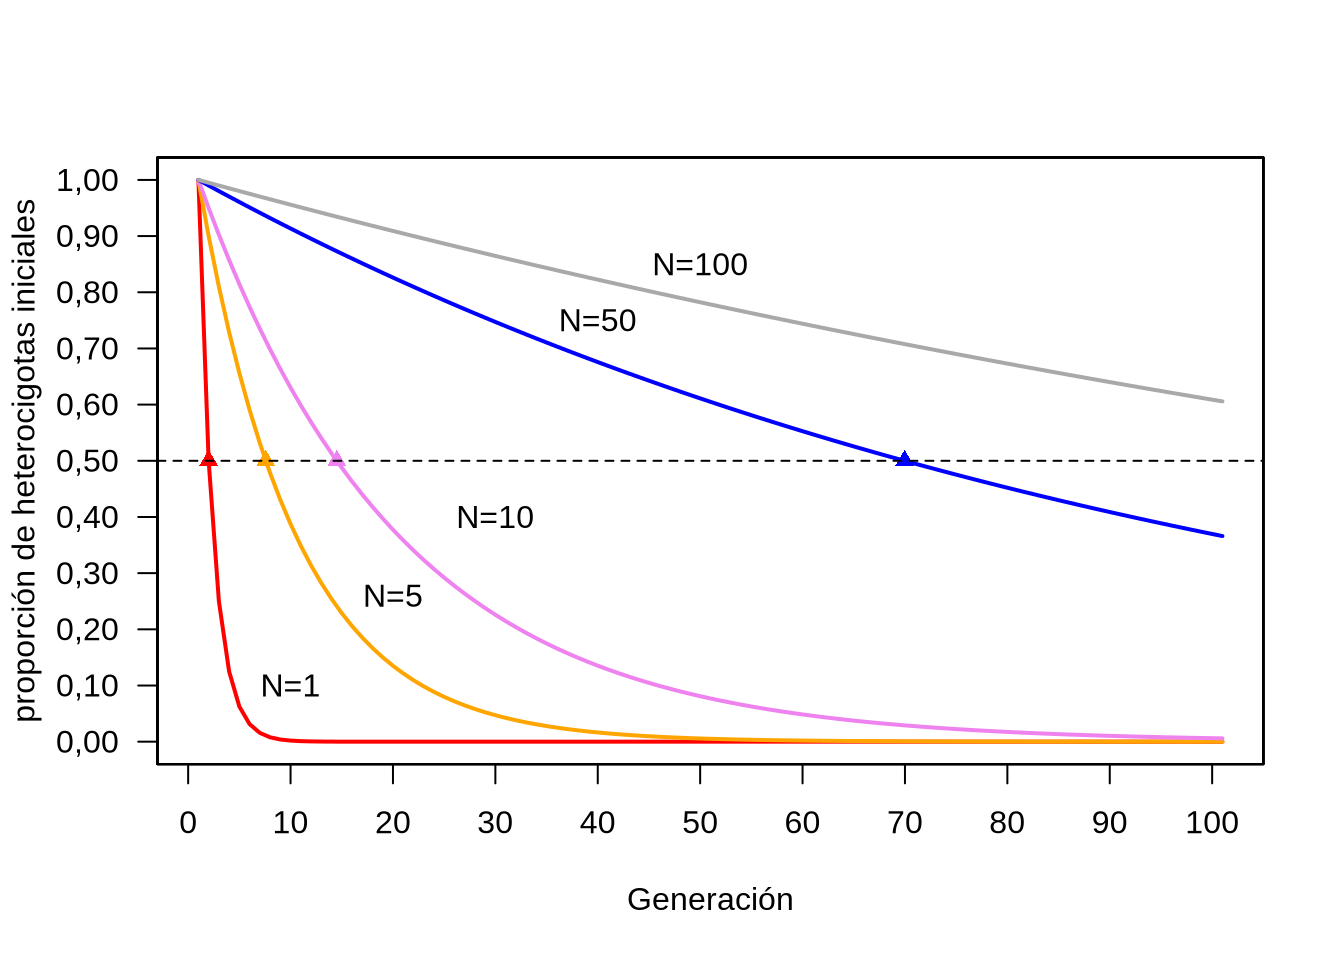 Reducción esperada en el número inicial de heterocigotas $H_0$ de acuerdo al tamaño N de las poblaciones y al número de generaciones transcurridas. La línea negra horizontal marca la reducción a la mitad del valor inicial y los puntos sobre las curvas resaltan el número de generaciones requeridas para esa reducción a la mitad.